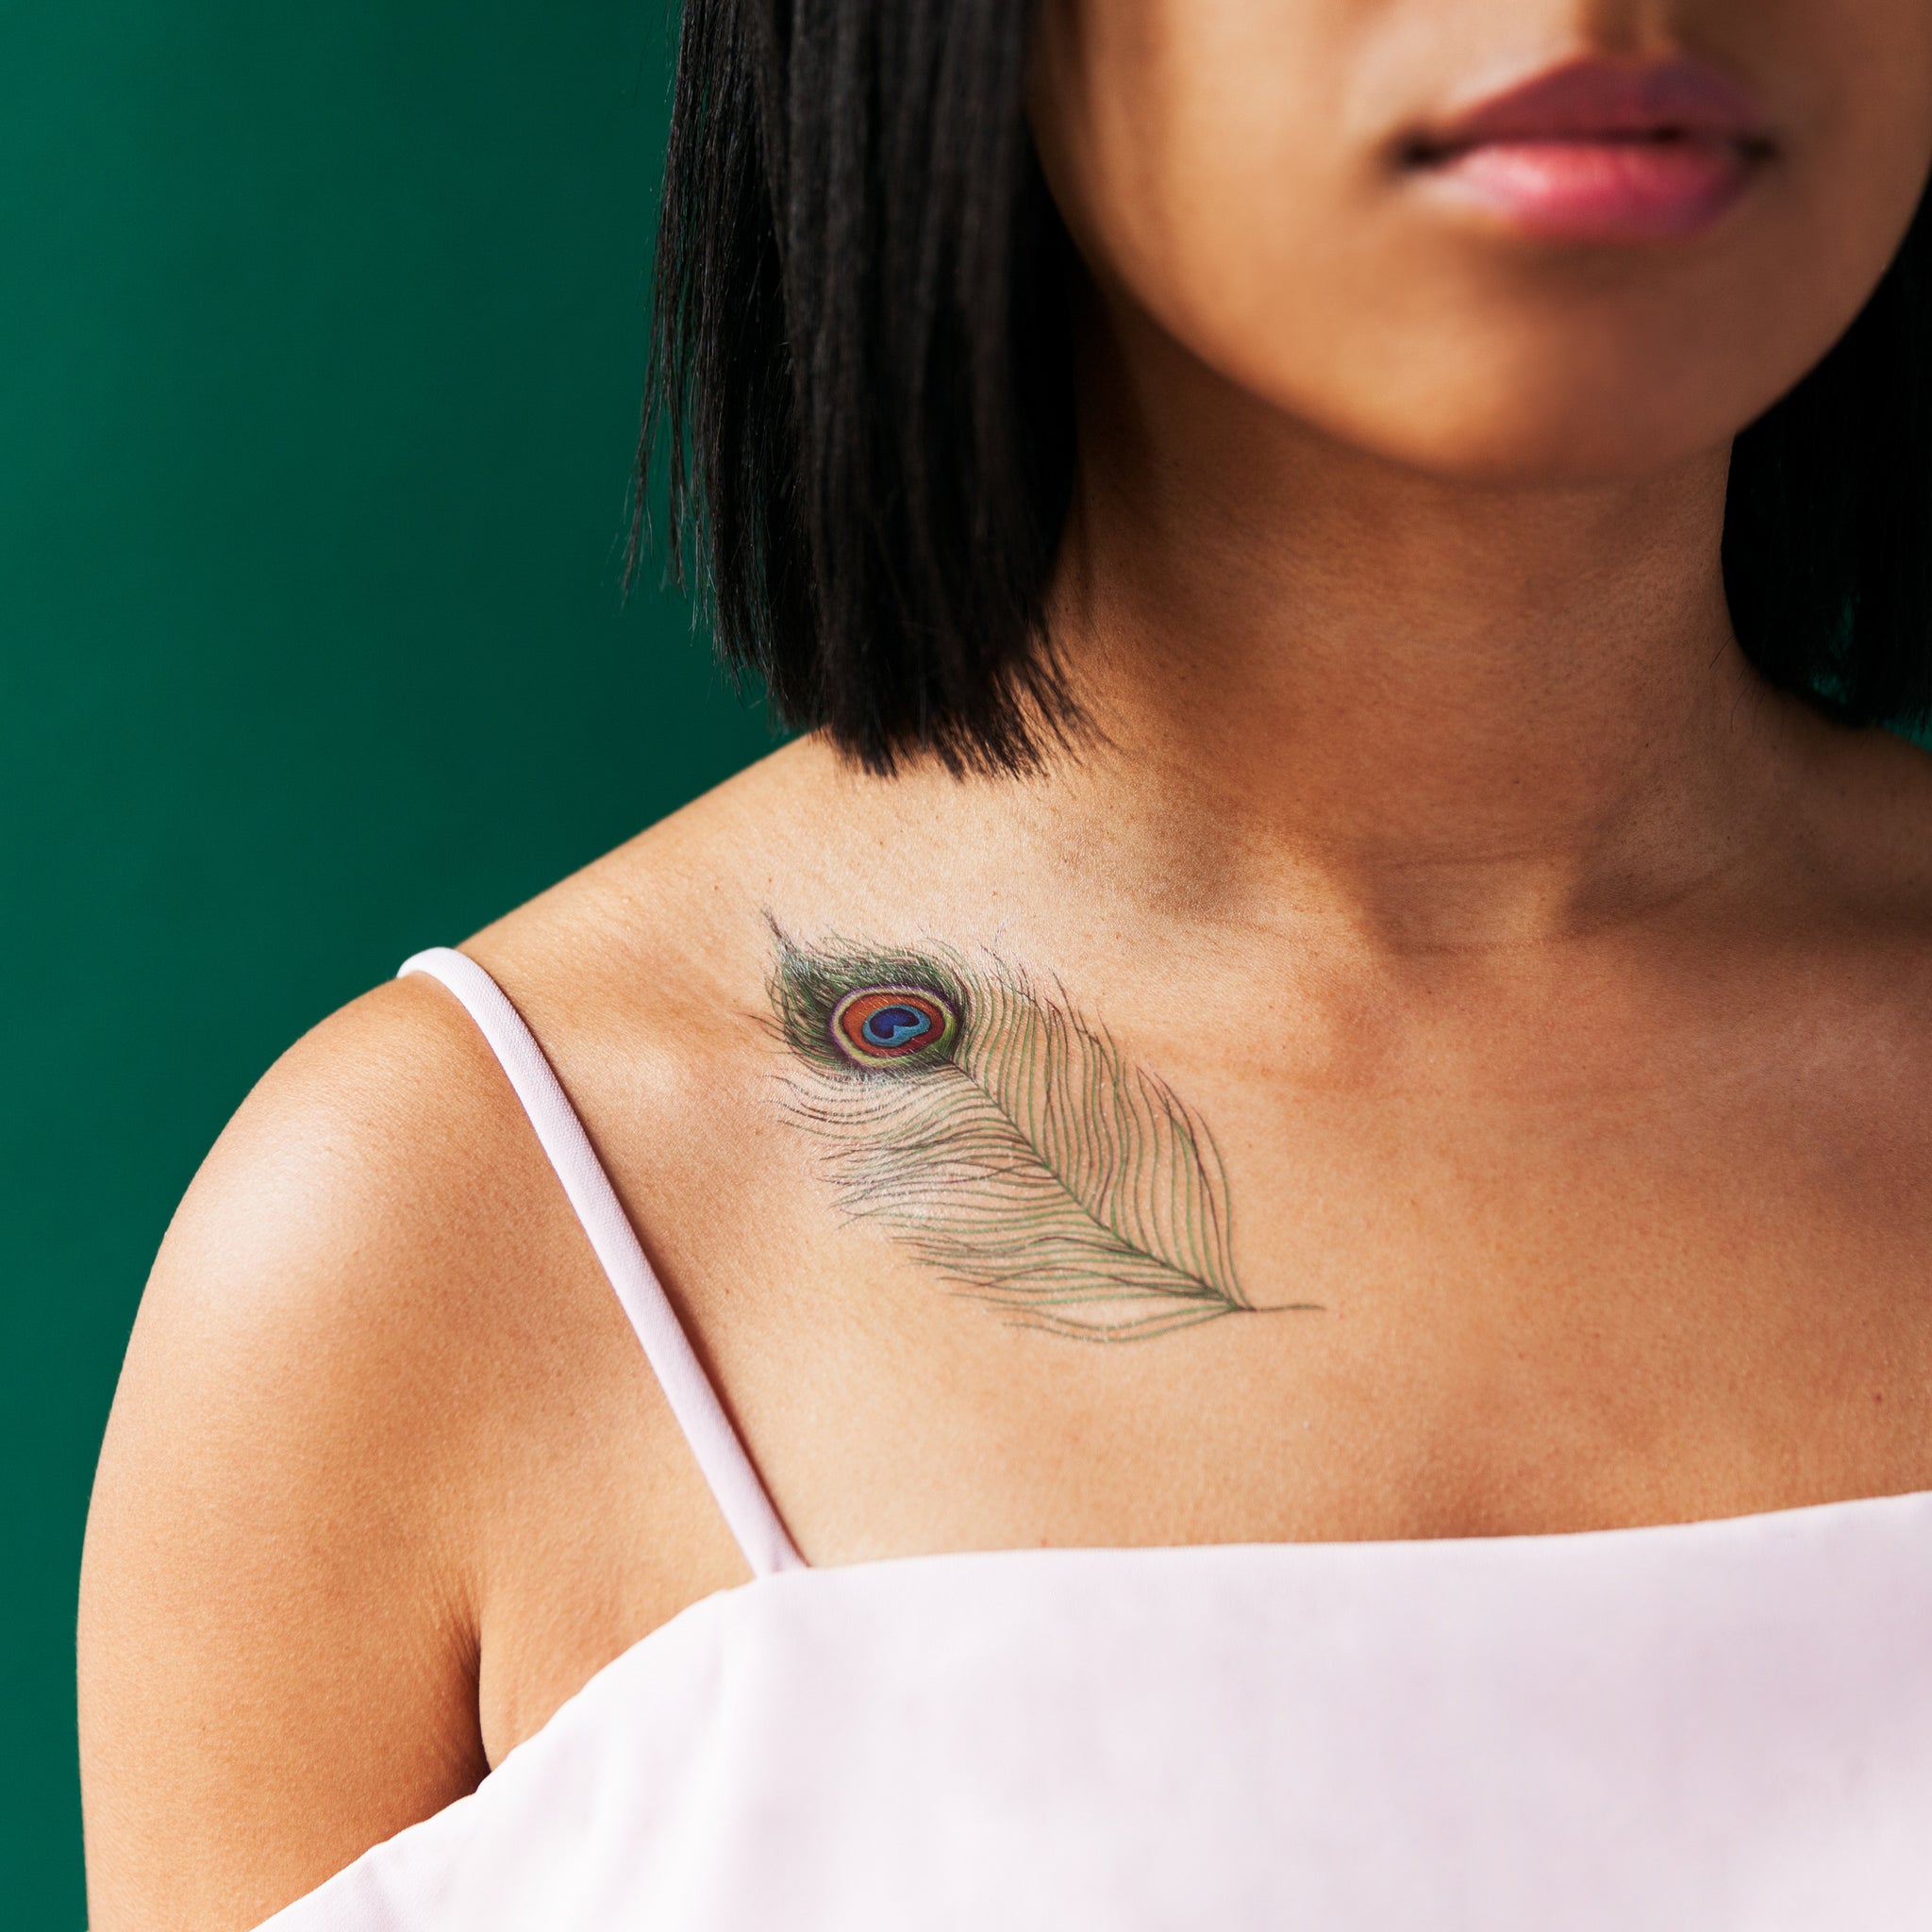 Tattoo uploaded by Shivaji borude • peacock feather with infinity • Tattoodo